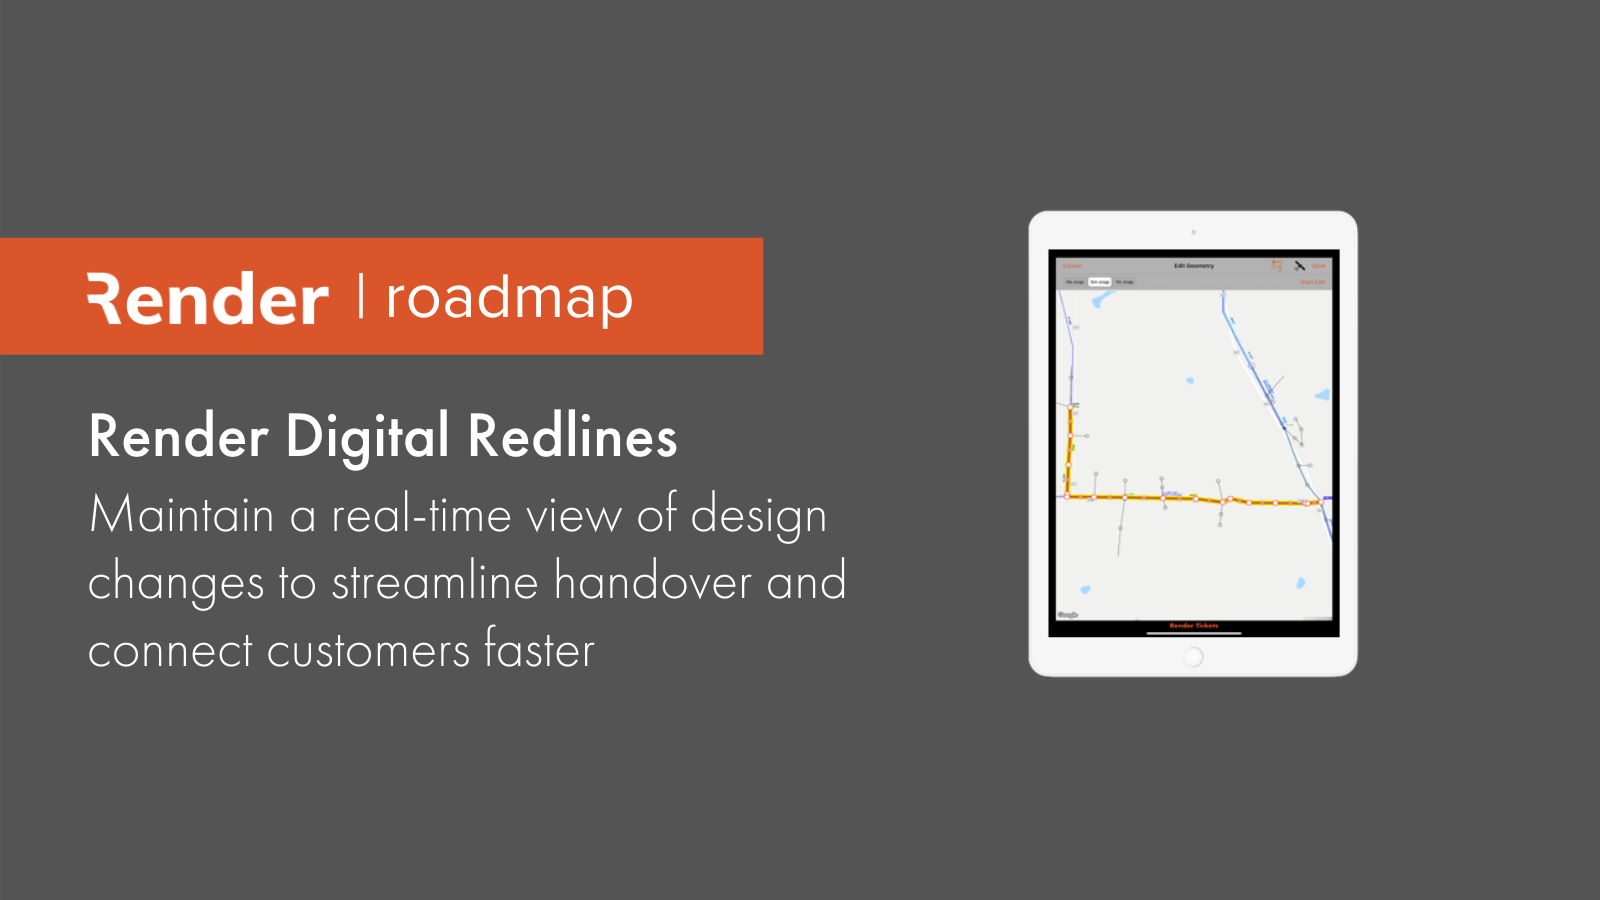 Render Roadmap Spotlight: Render Digital Redlines